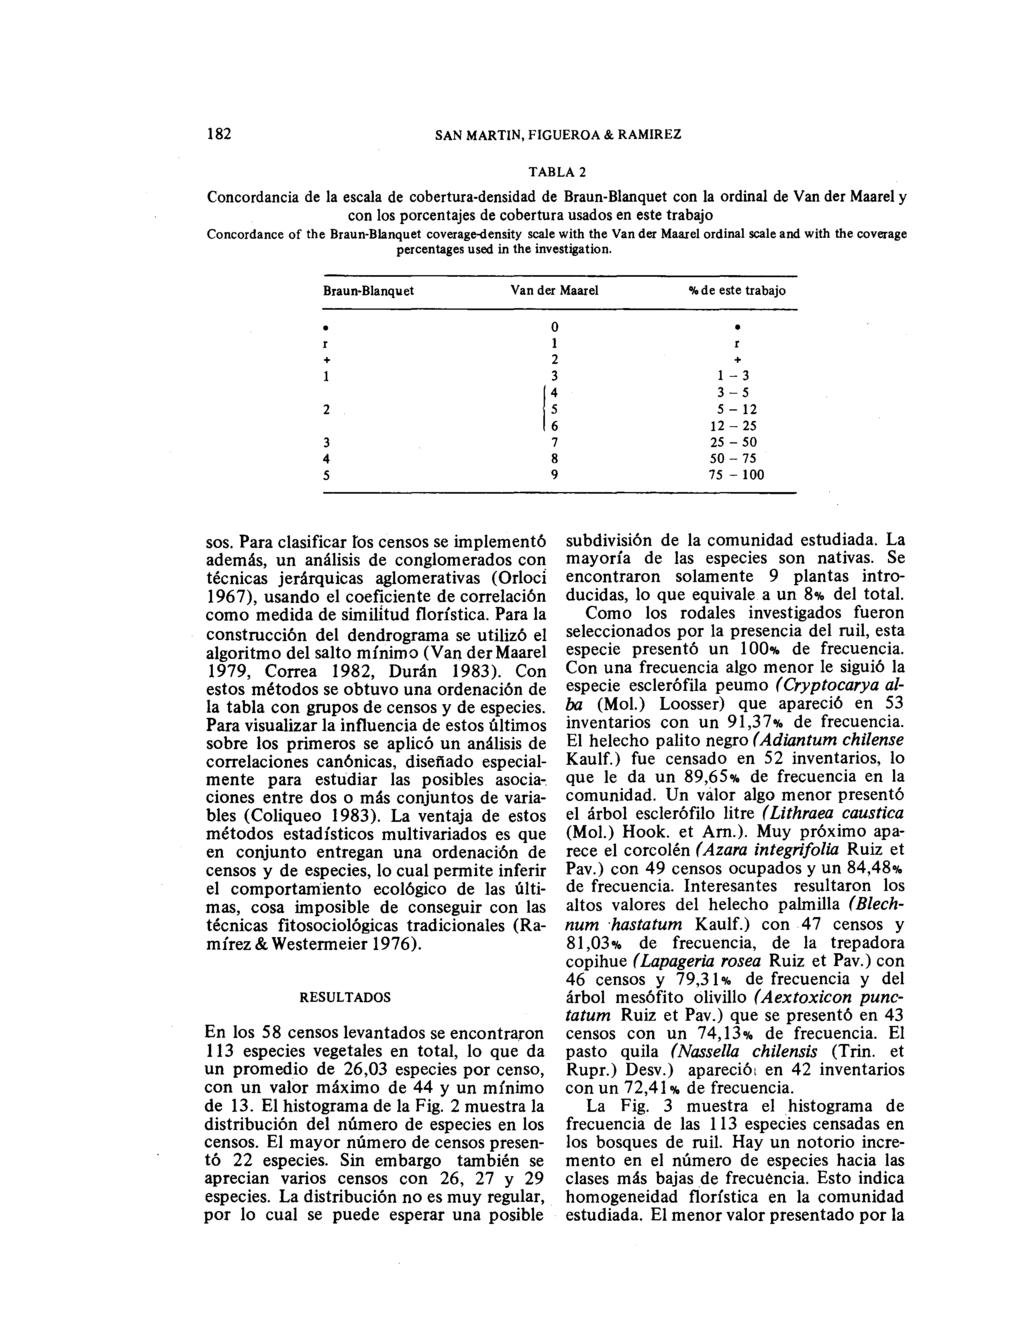 SN MRTIN, FIGUERO & RMIREZ TBL Concordancia de la escala de cobertura-densidad de Braun-Blanquet con la ordinal de Van der Maarel y con los porcentajes de cobertura usados en este trabajo Concordance